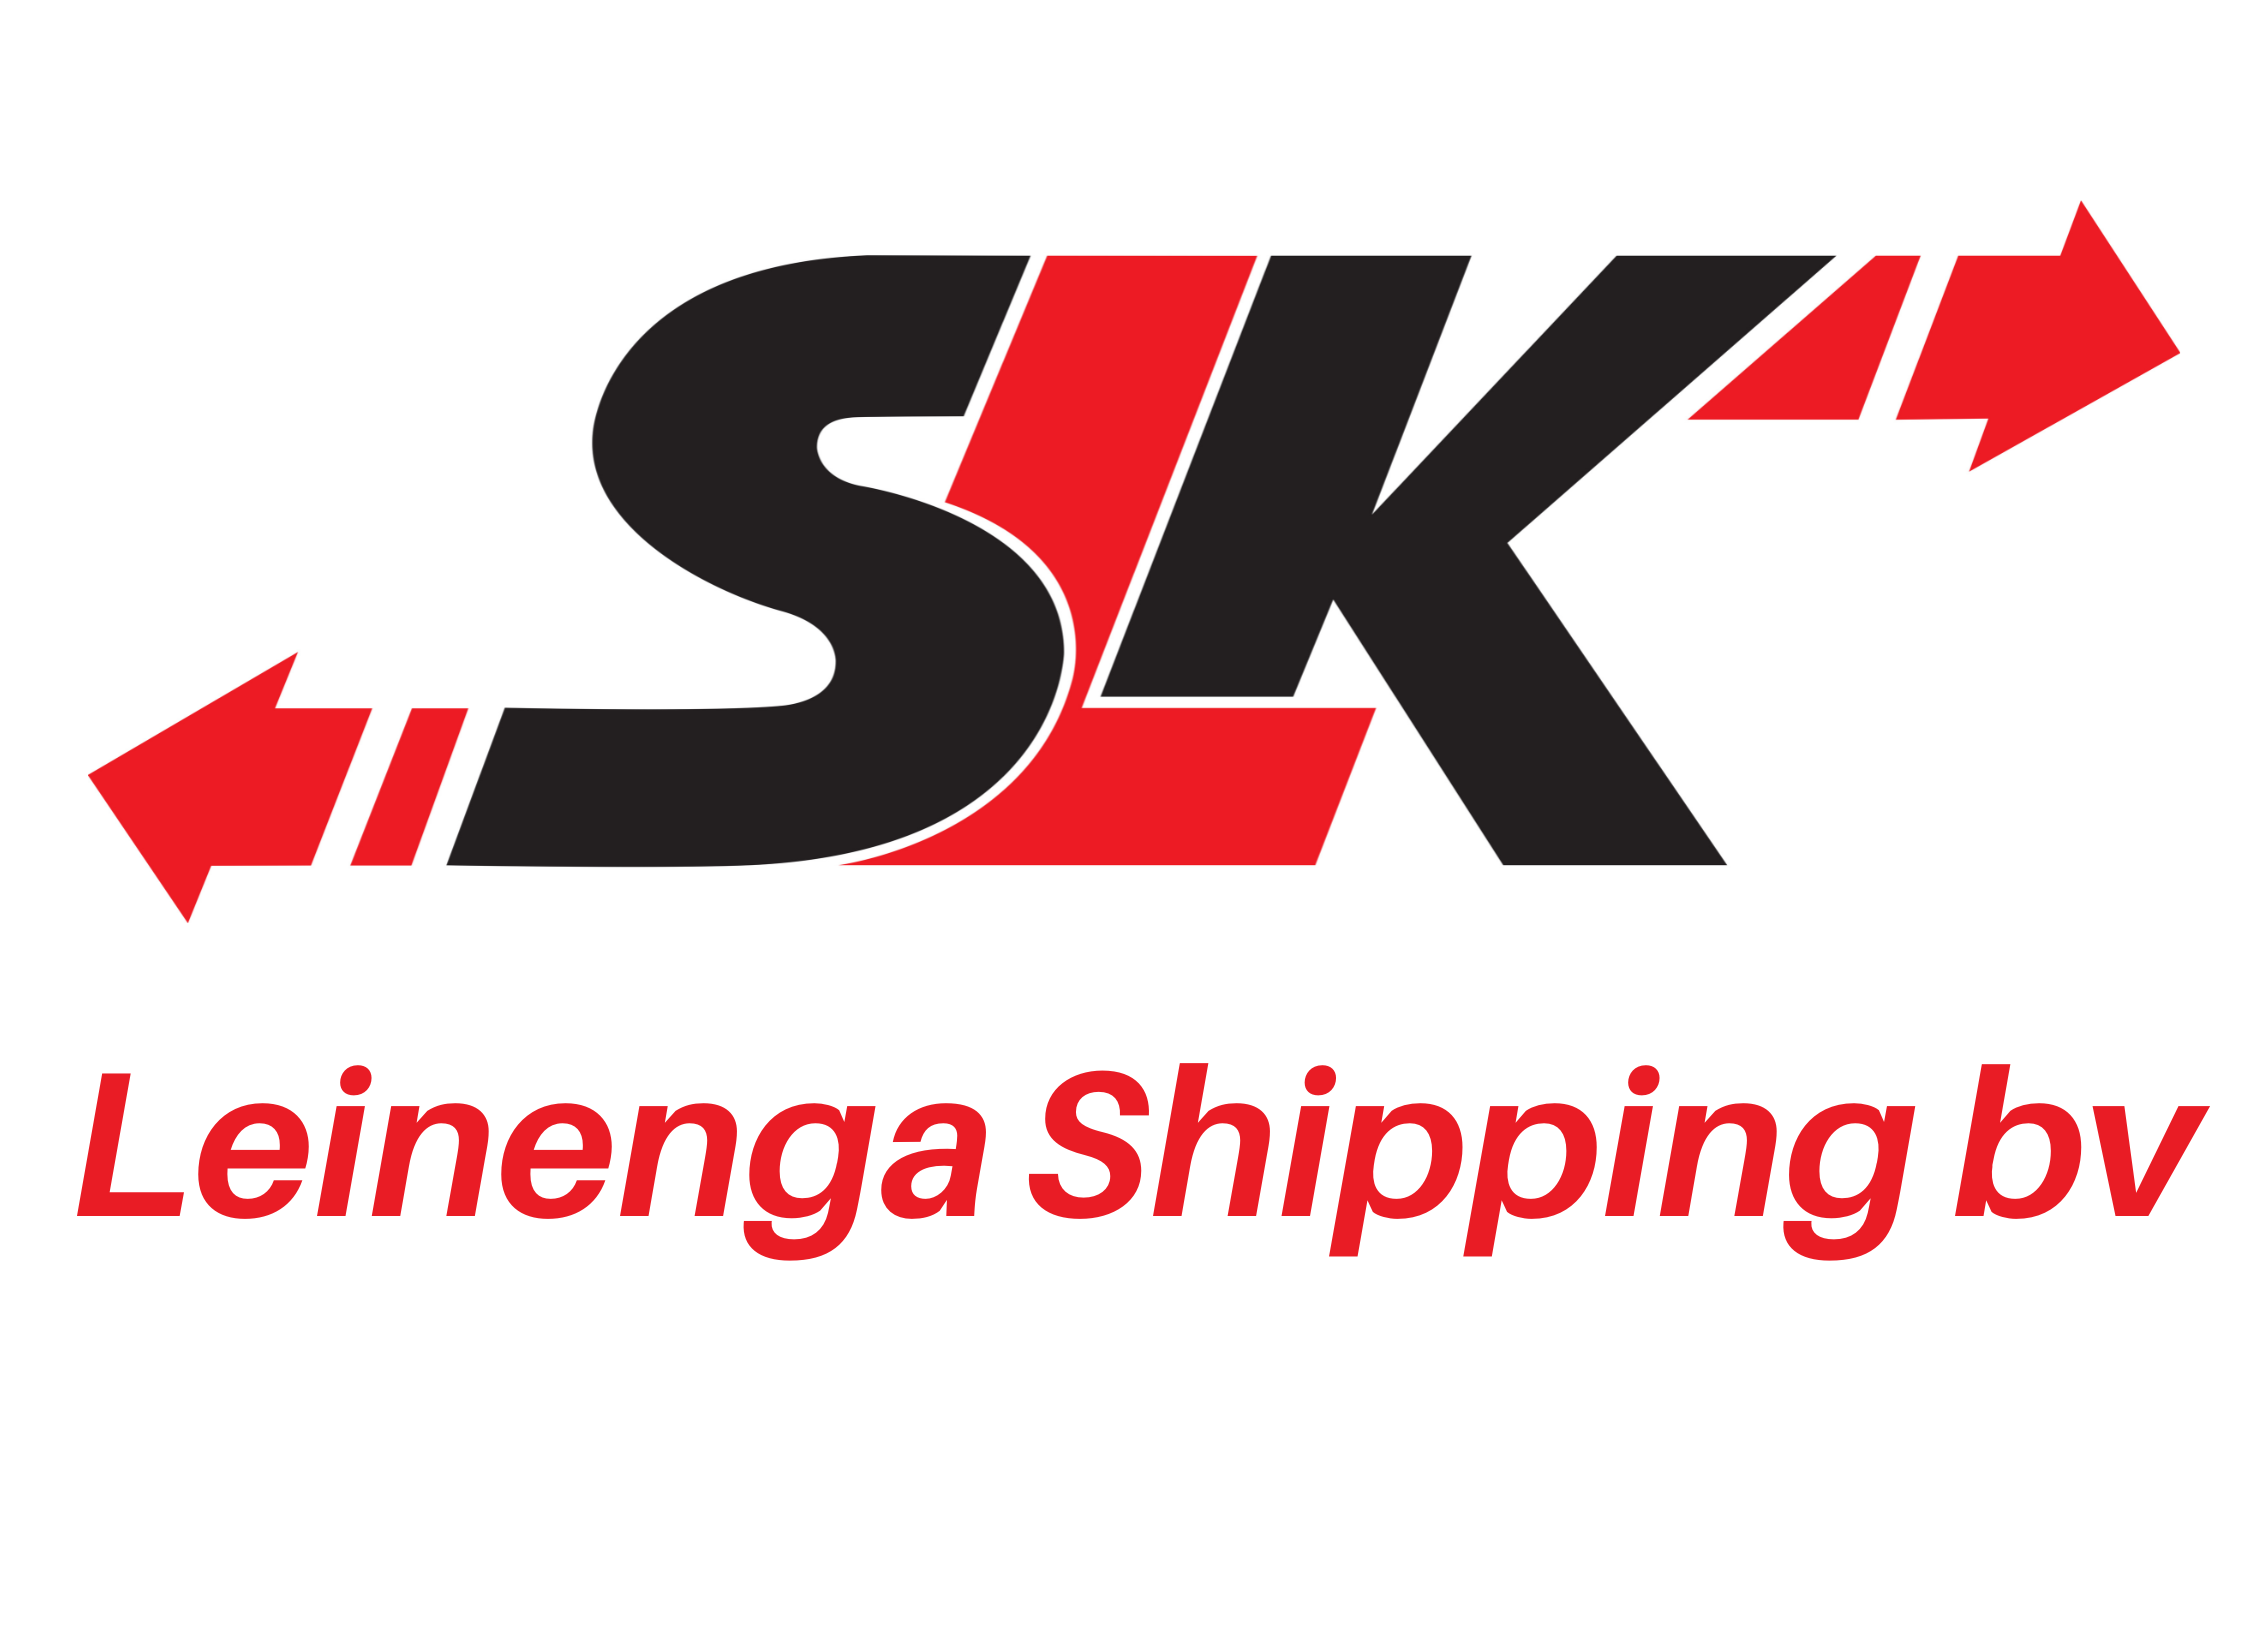 SLK Leinenga Shipping bv logo met tekst